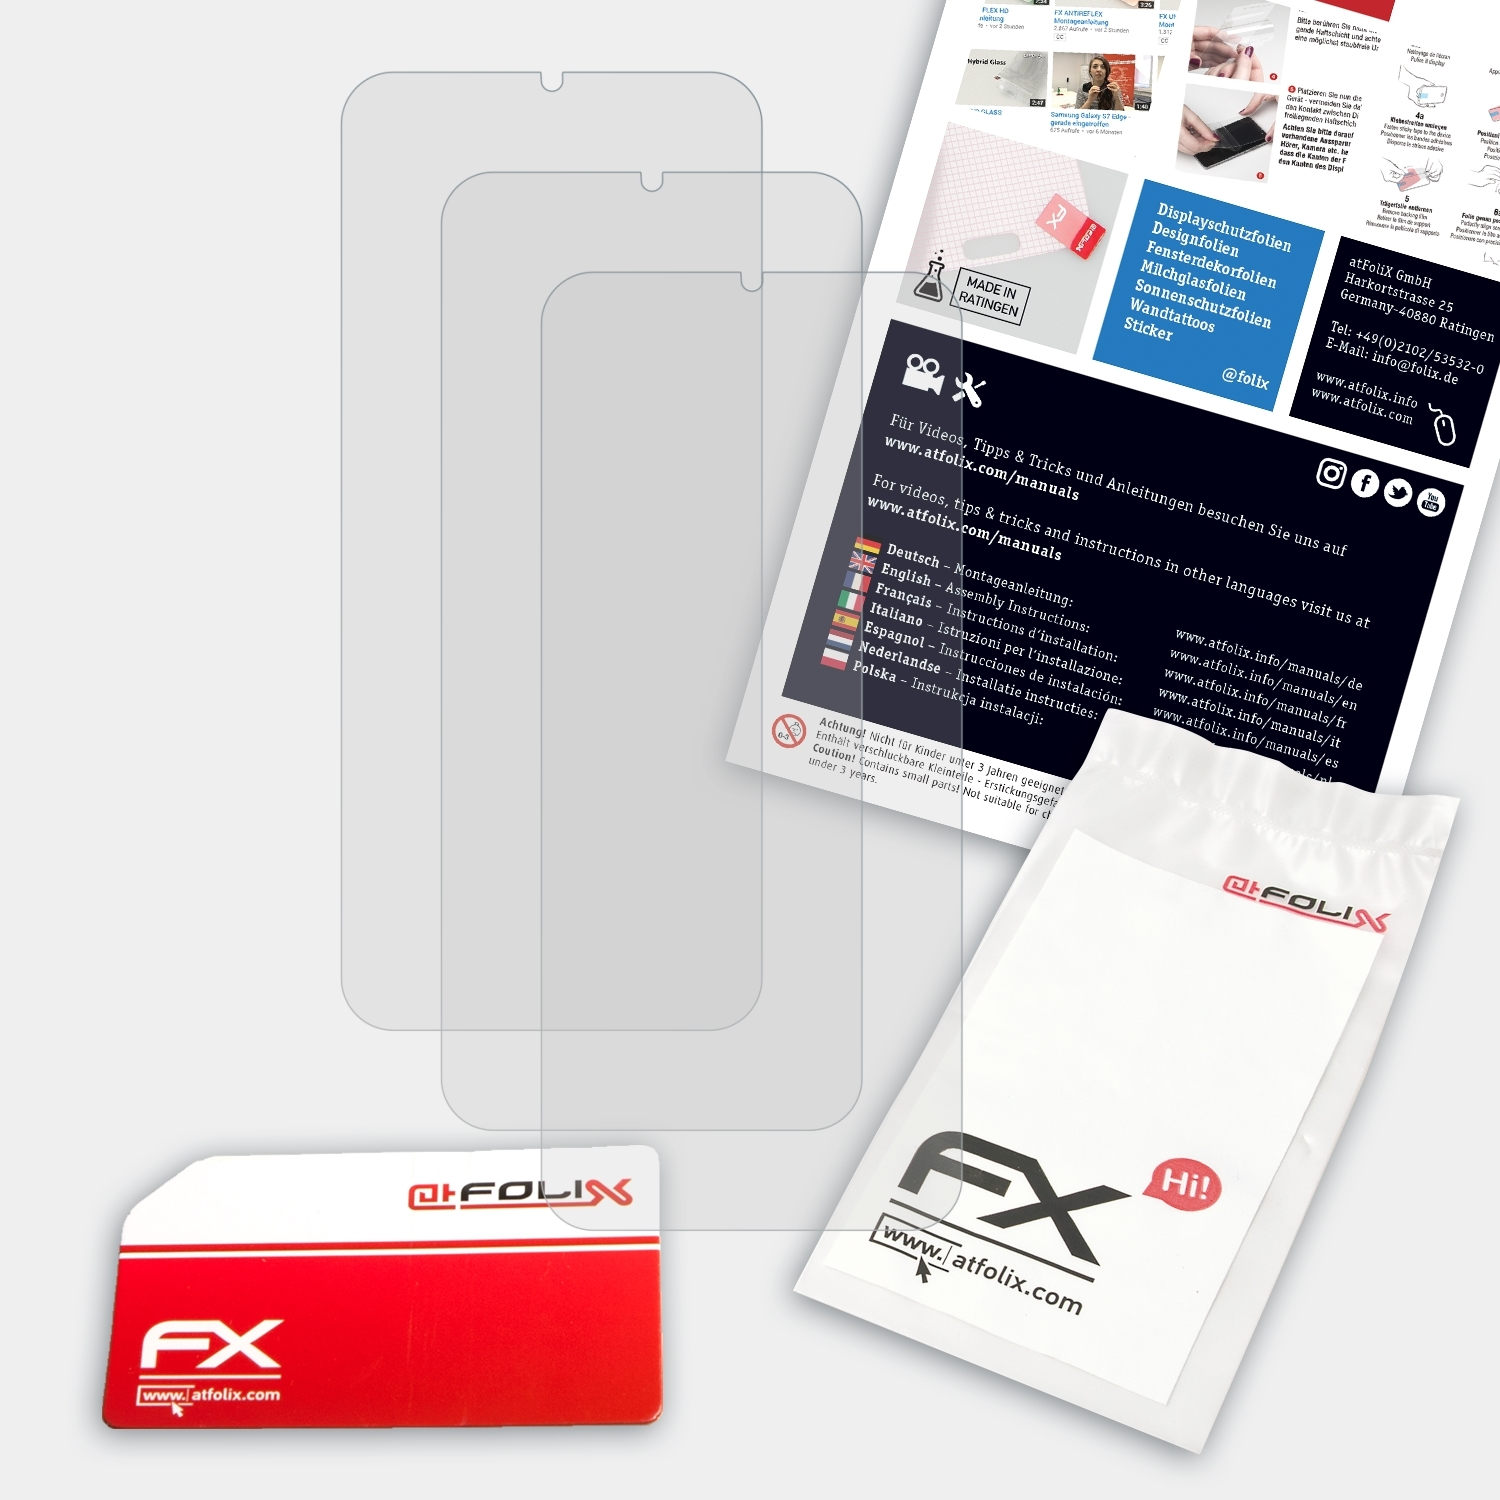 7P) Displayschutz(für Note Ulefone 3x FX-Antireflex ATFOLIX